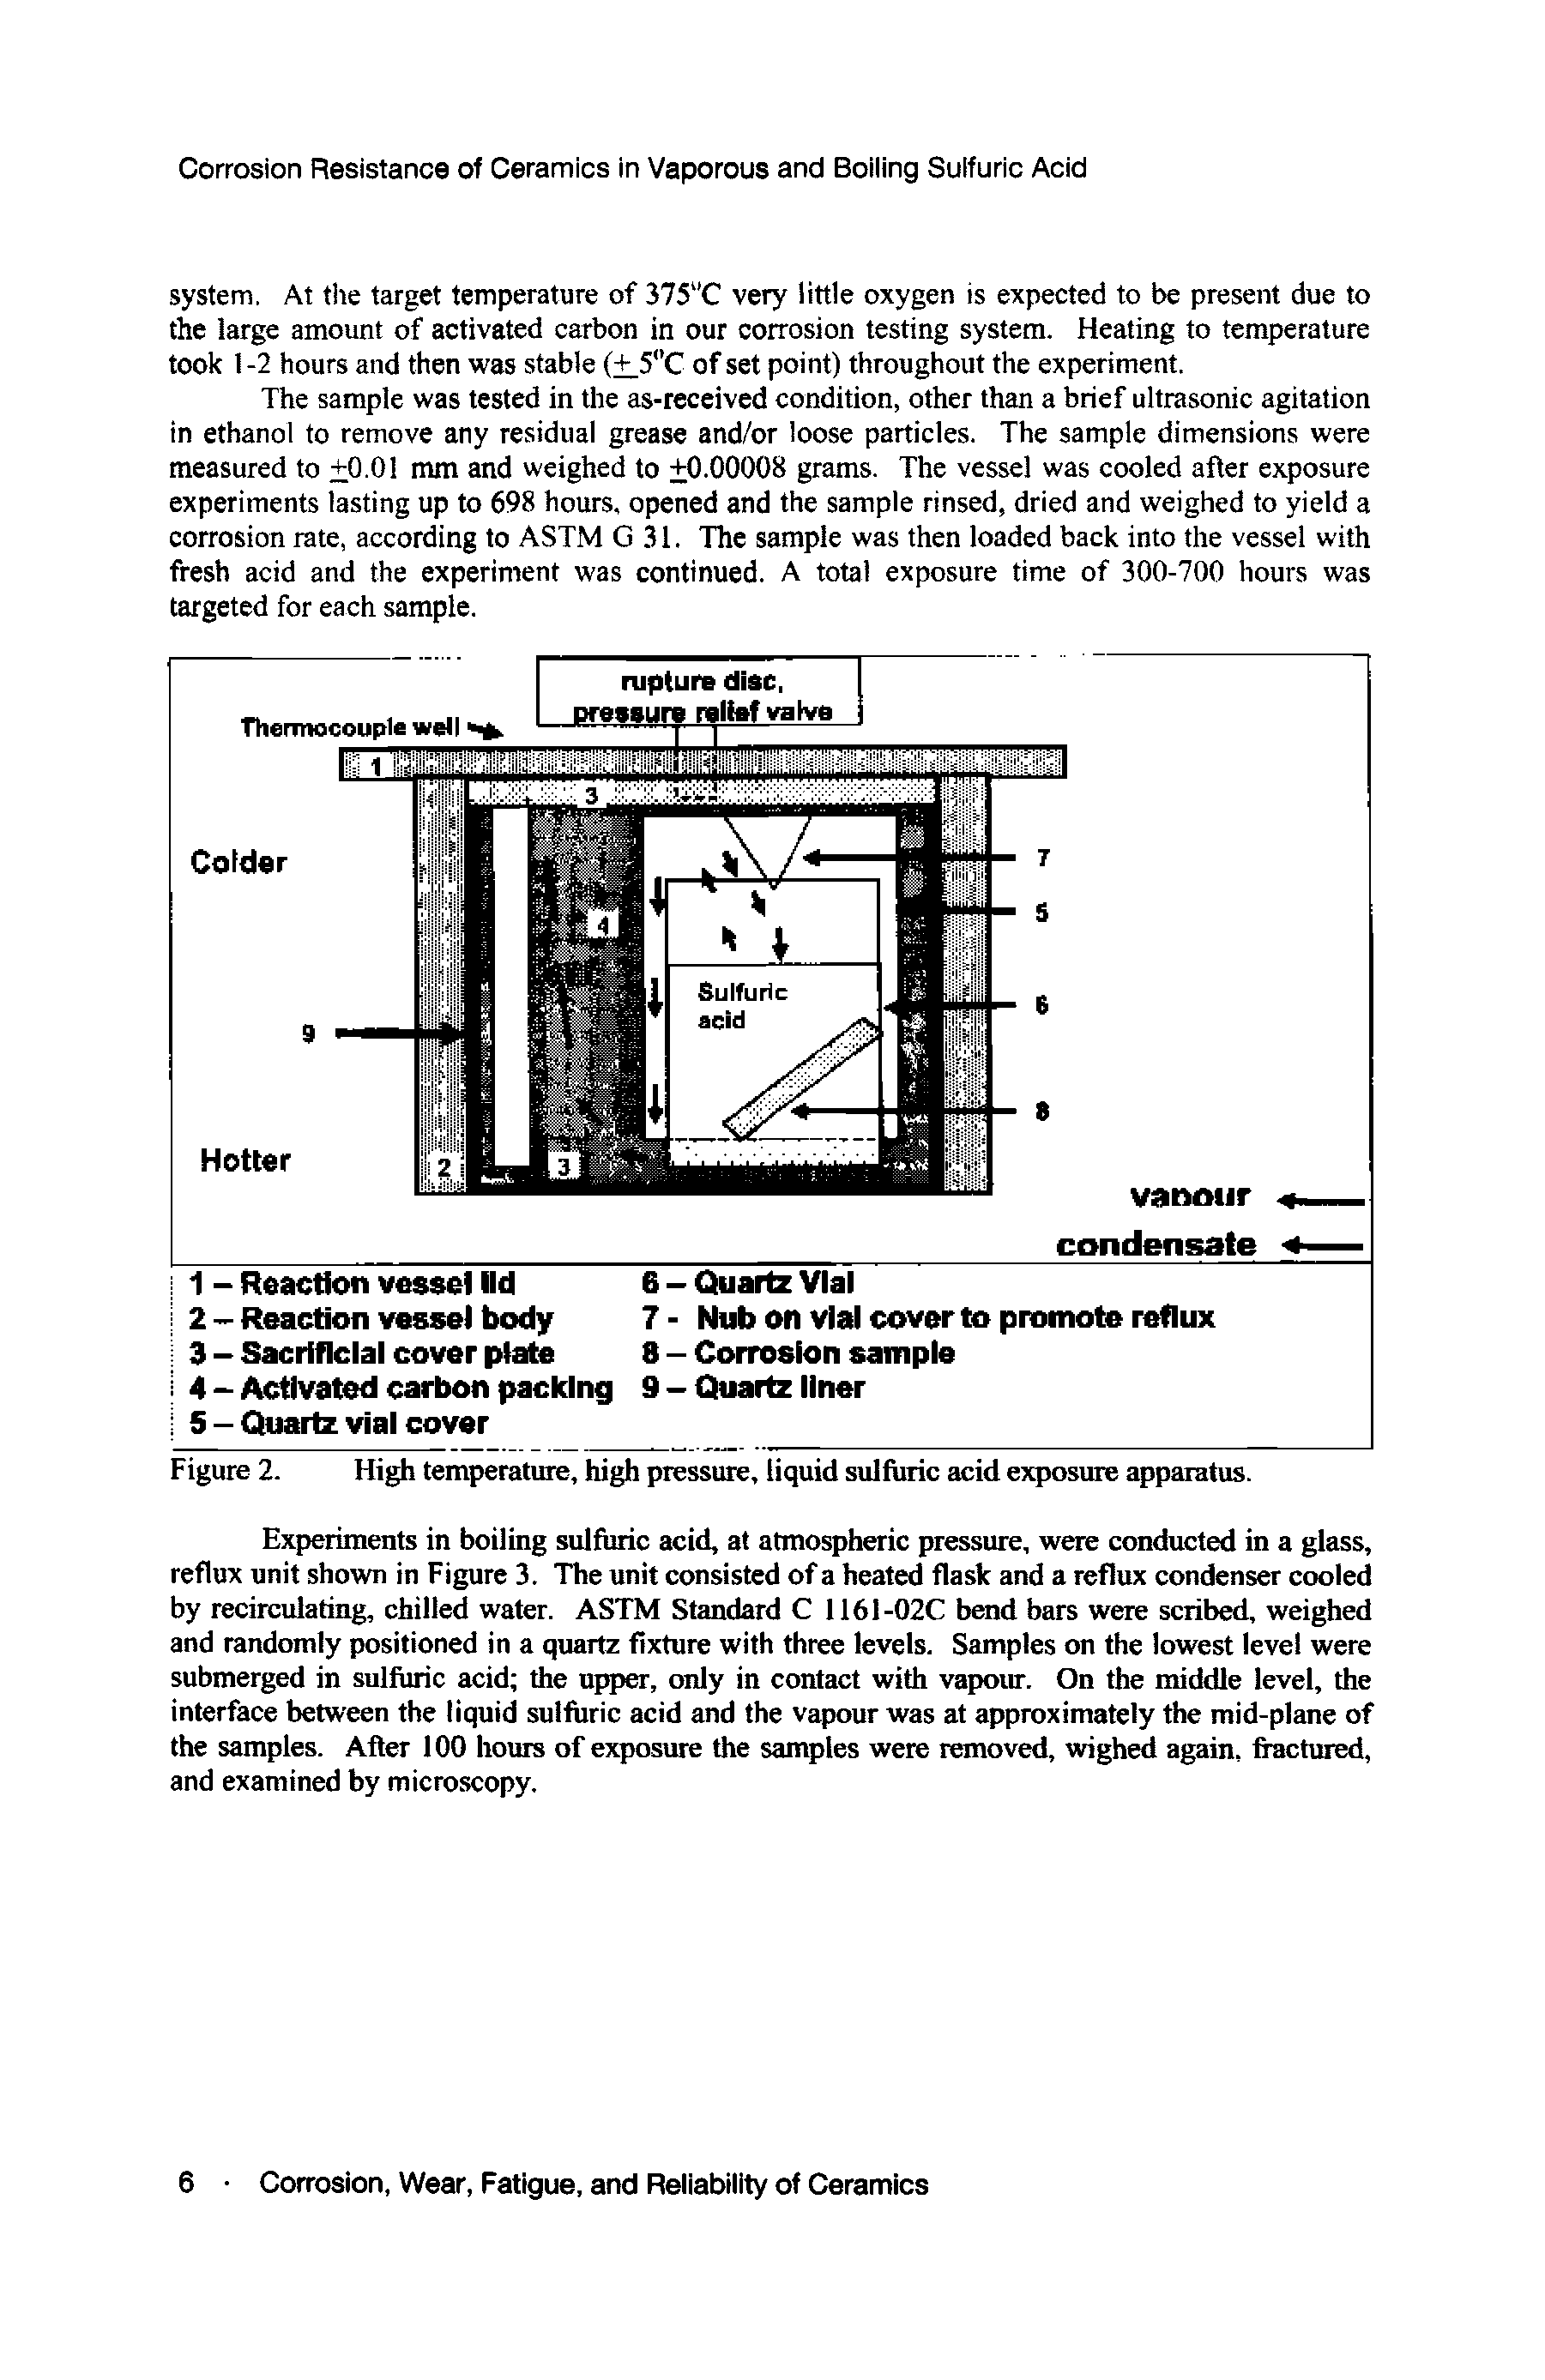 Figure 2. High temperature, high pressure, liquid sulfuric acid exposure apparatus.